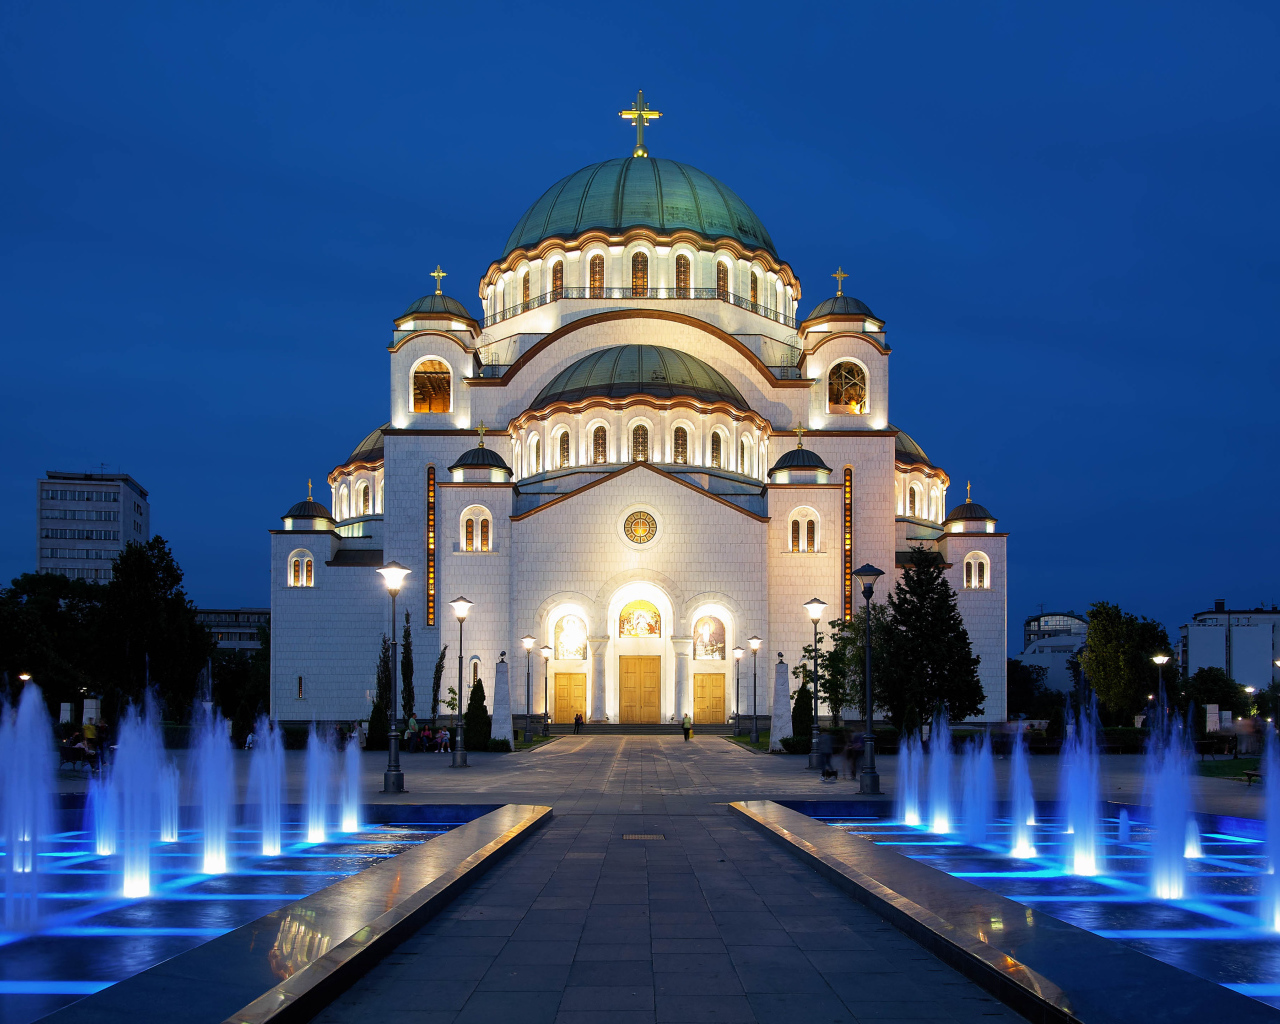 Фонтаны у храма Святого Саввы вечером, Белград. Сербия